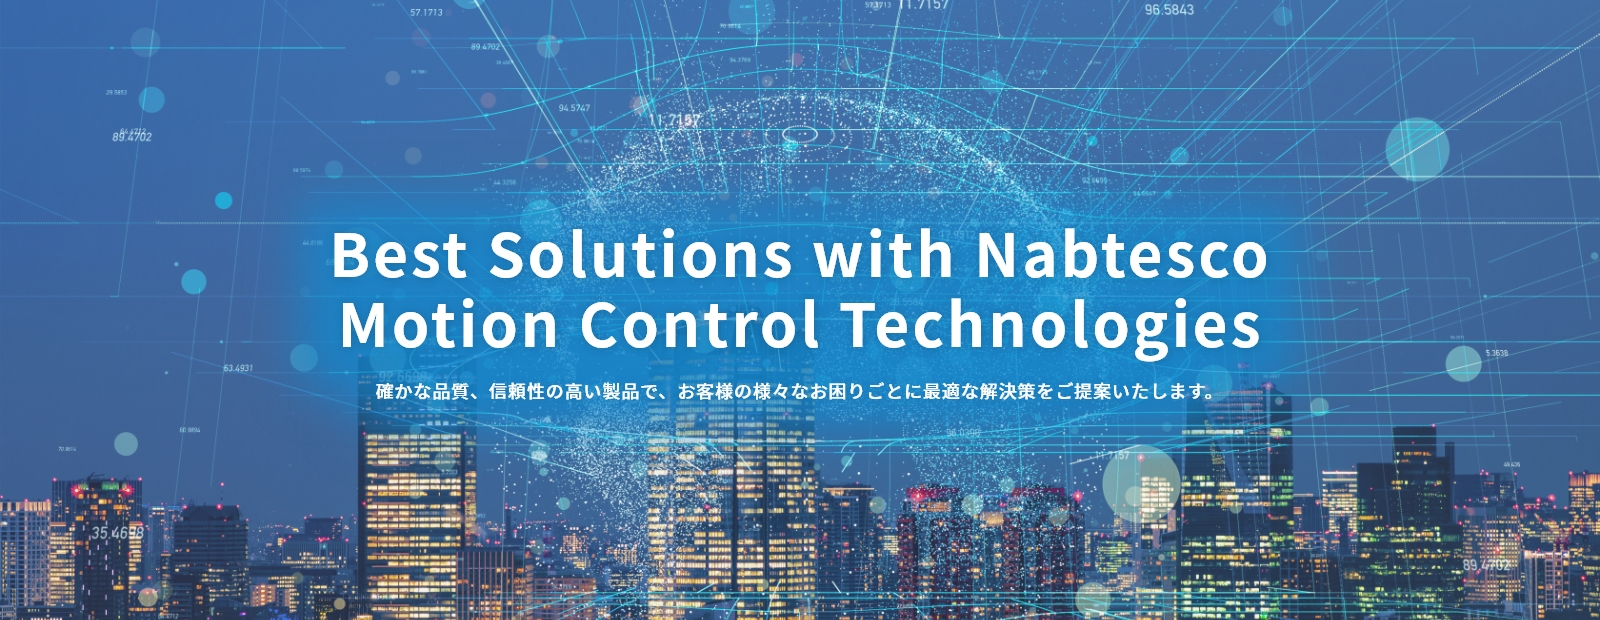 Best Solutions with Nabtesco Motion Control Technologies 確かな品質、信頼性の高い製品で、お客様の様々なお困りごとに最適な解決策をご提案いたします。